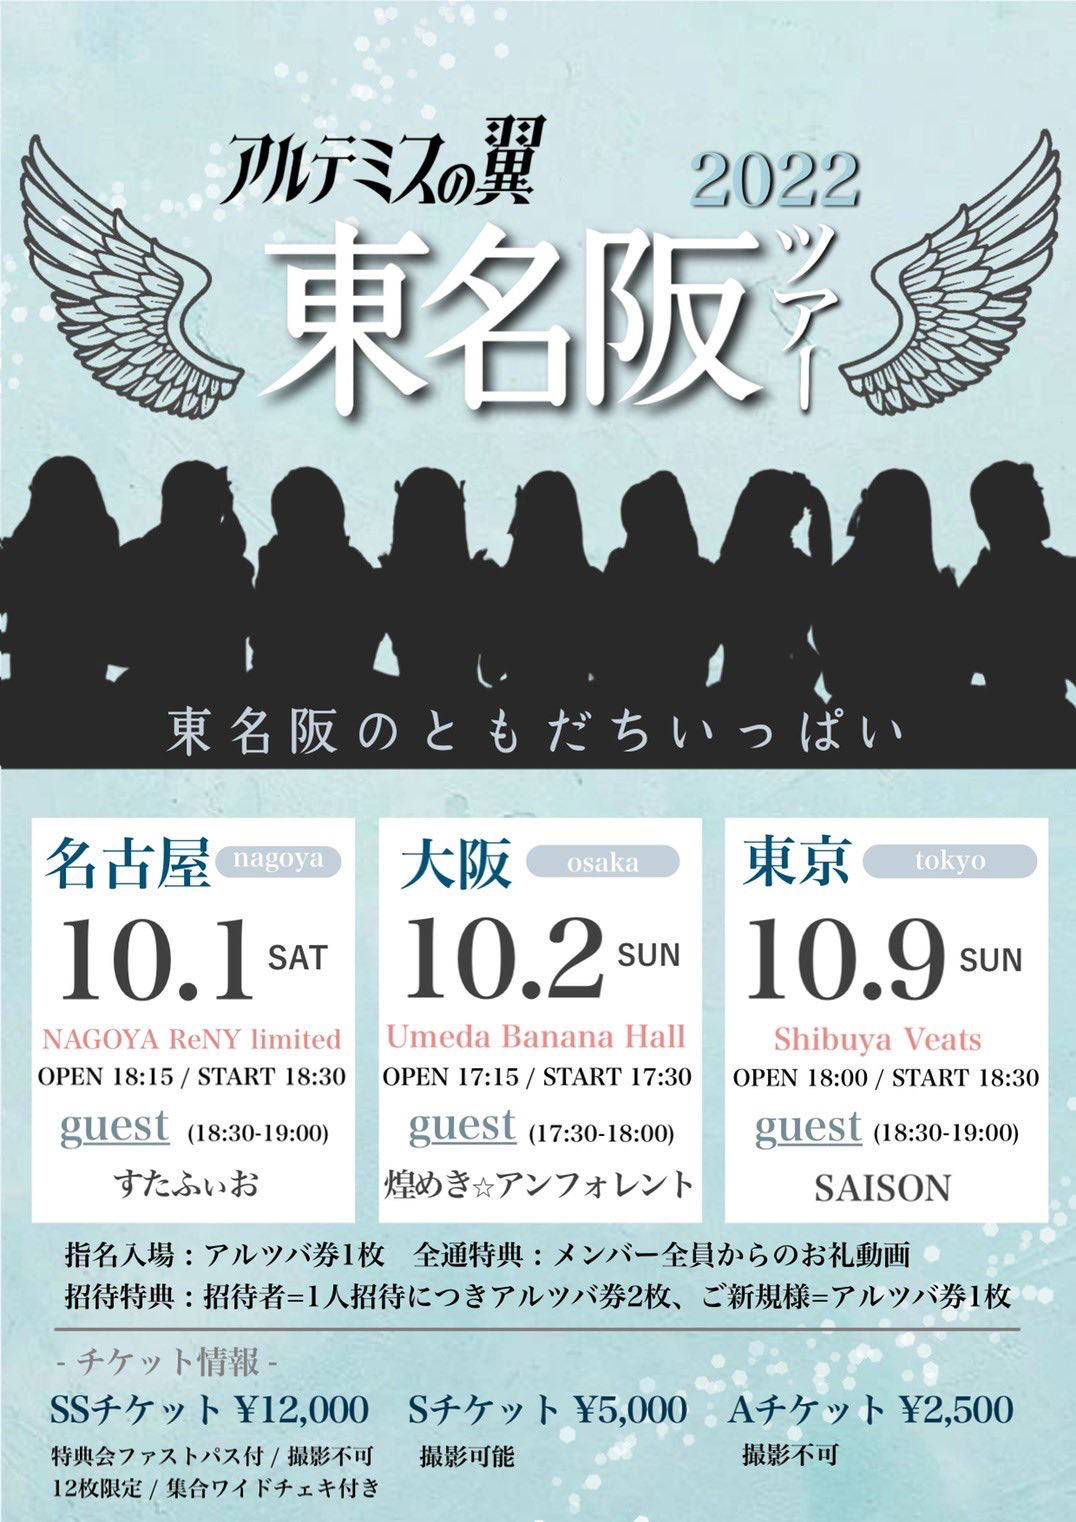 アルテミスの翼 東名阪ツアー2022 「東名阪のともだちいっぱい」大阪公演